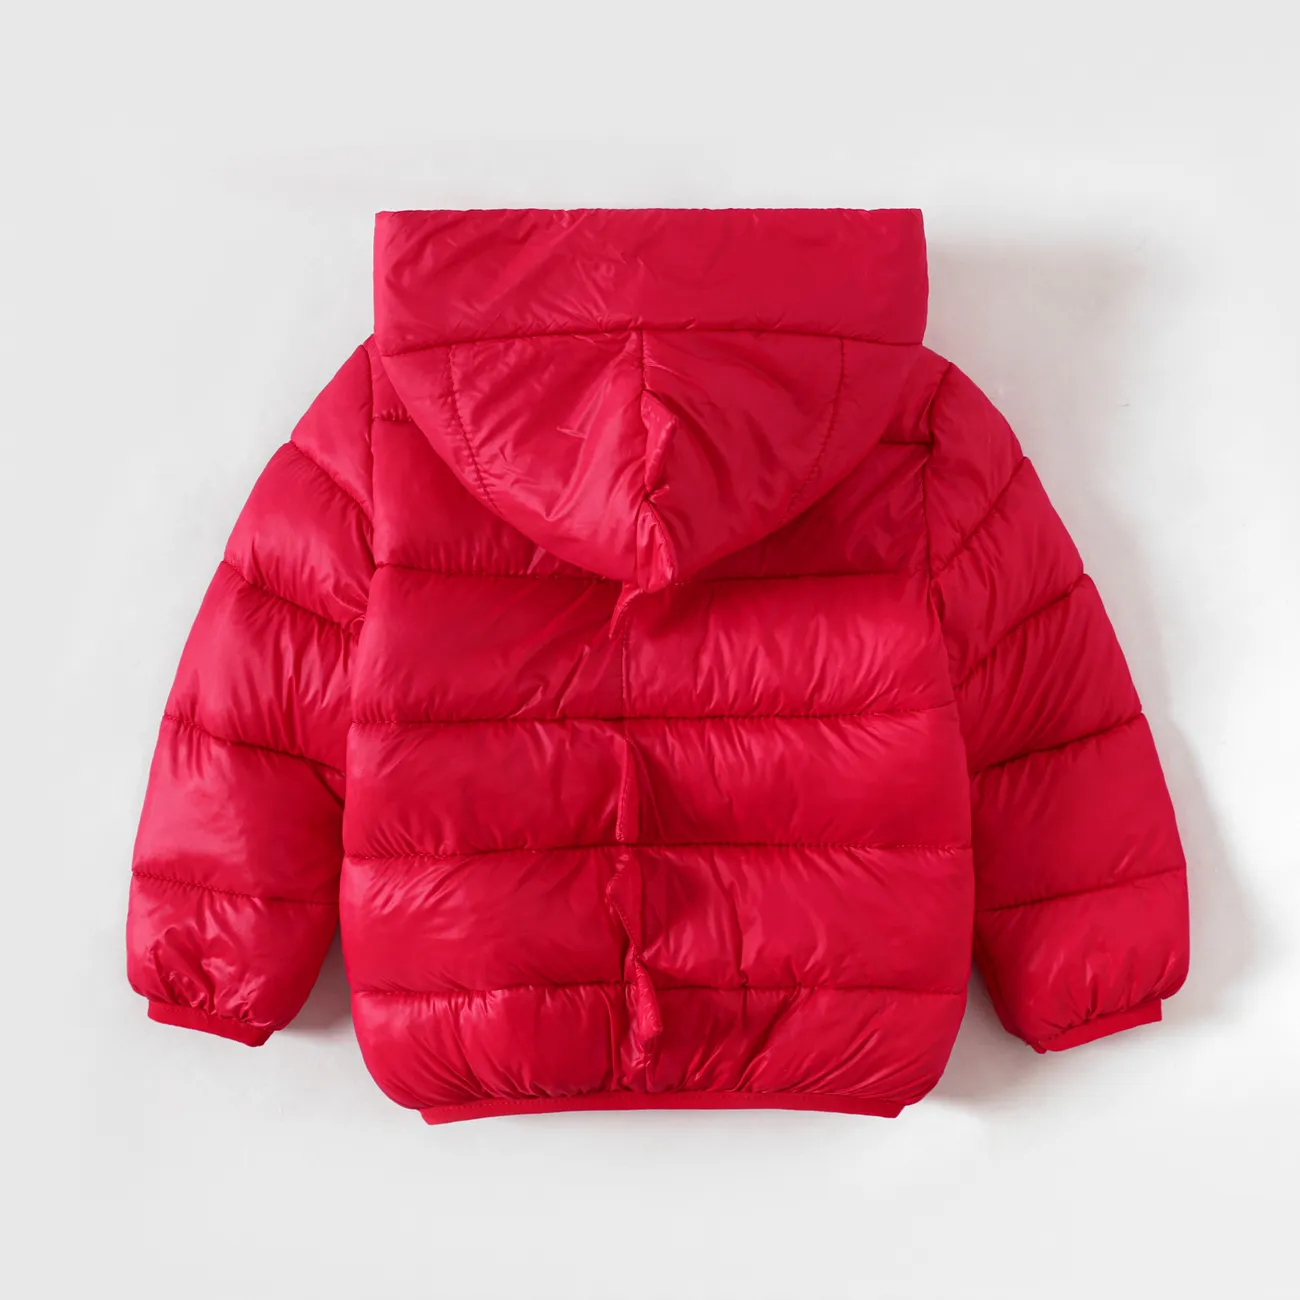 طفل صبي / فتاة طفولي 3D معطف معتم أحمر big image 1